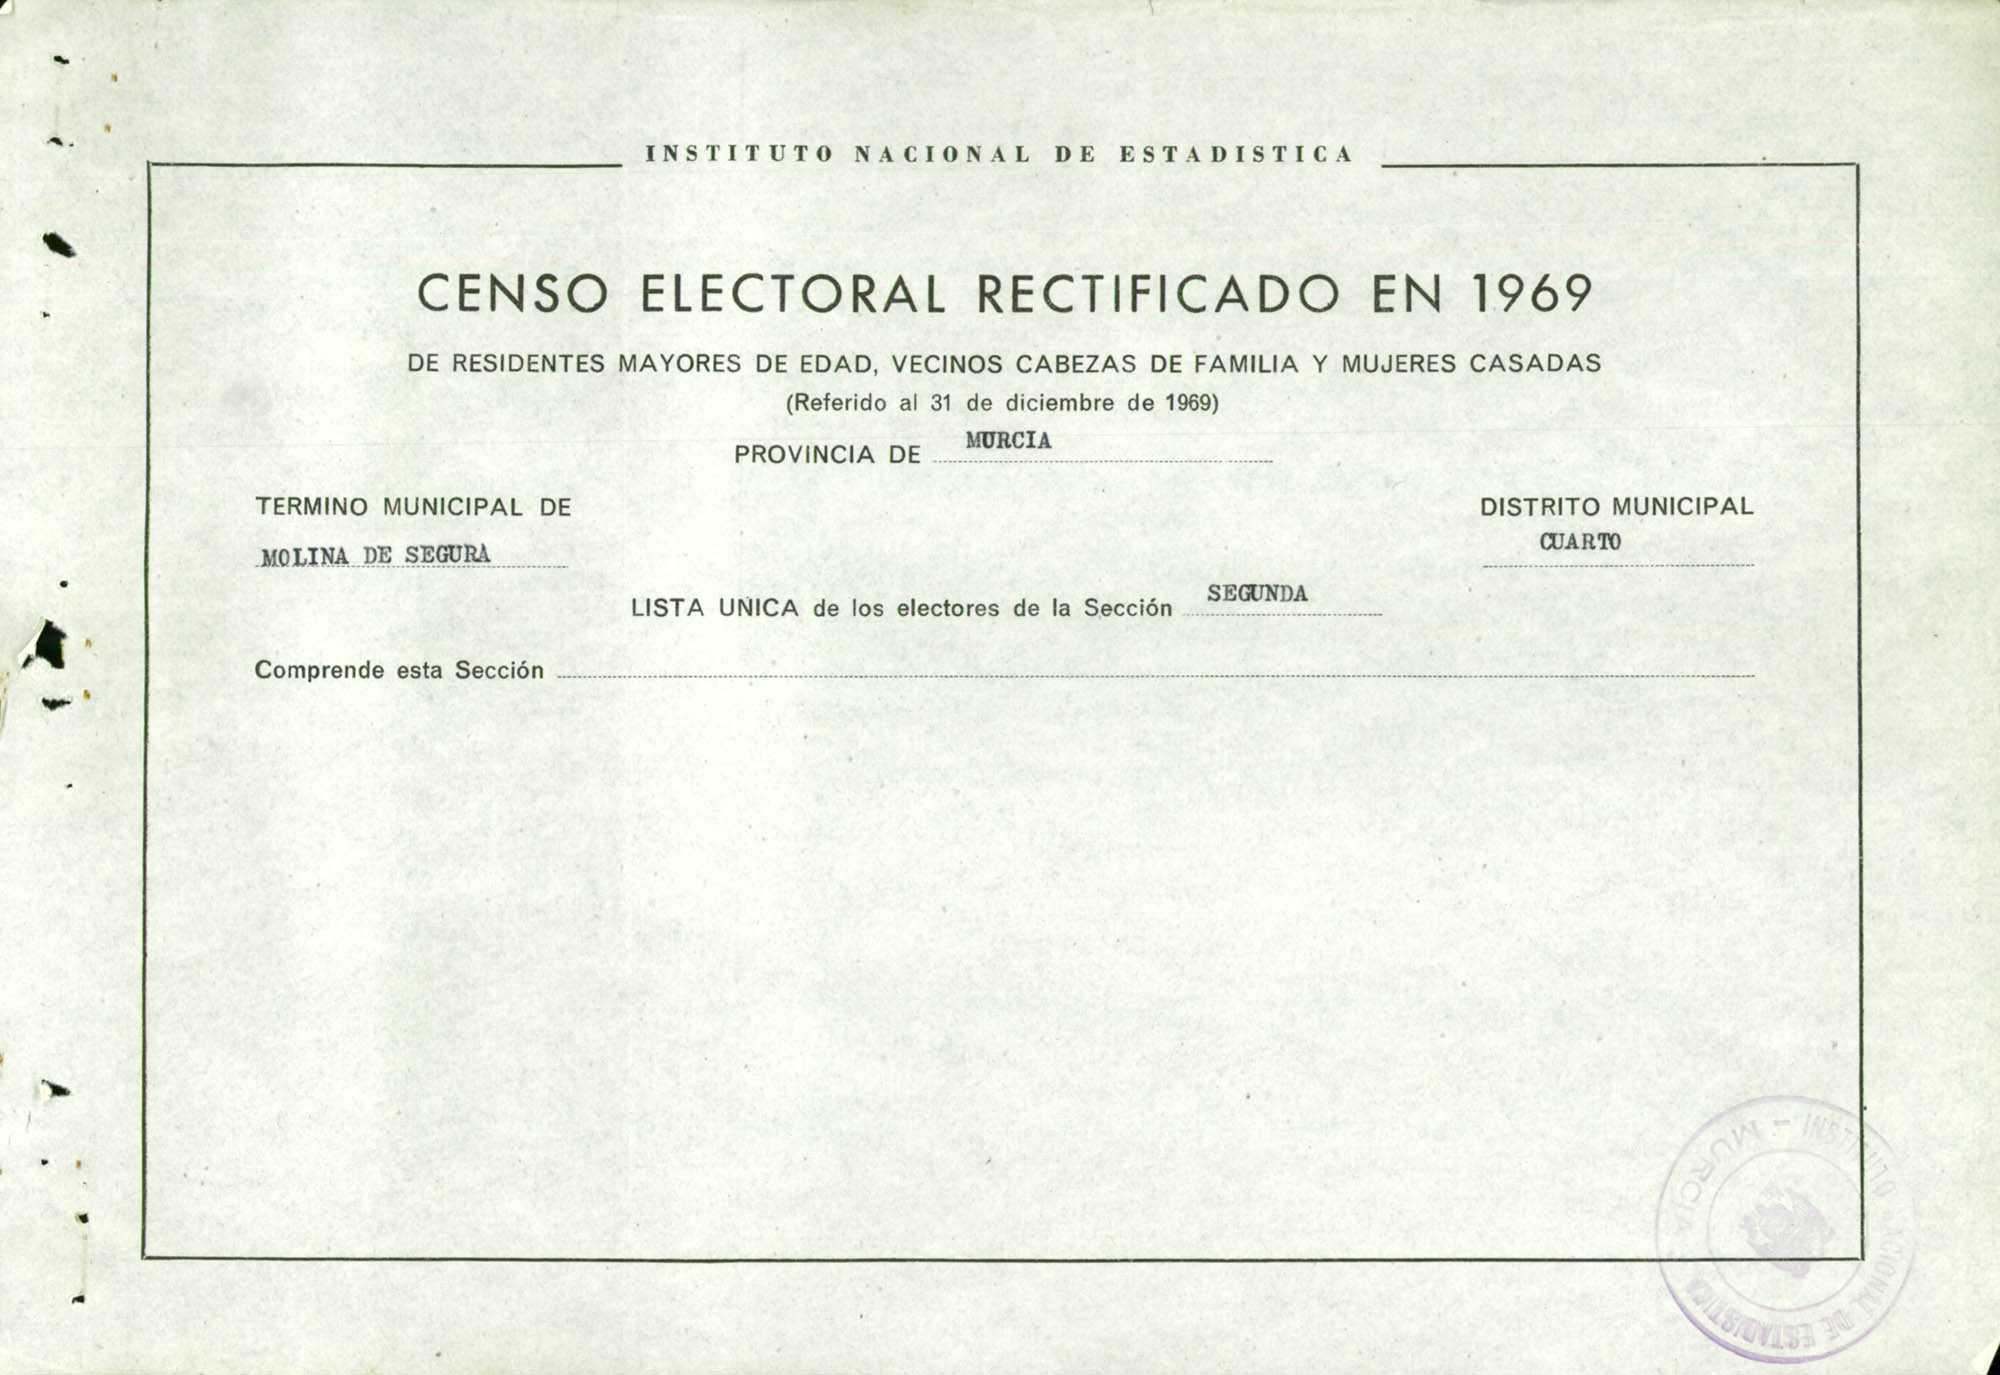 Censo electoral rectificado en 1969: listas definitivas de Molina de Segura, Distrito 4º, sección 2ª.